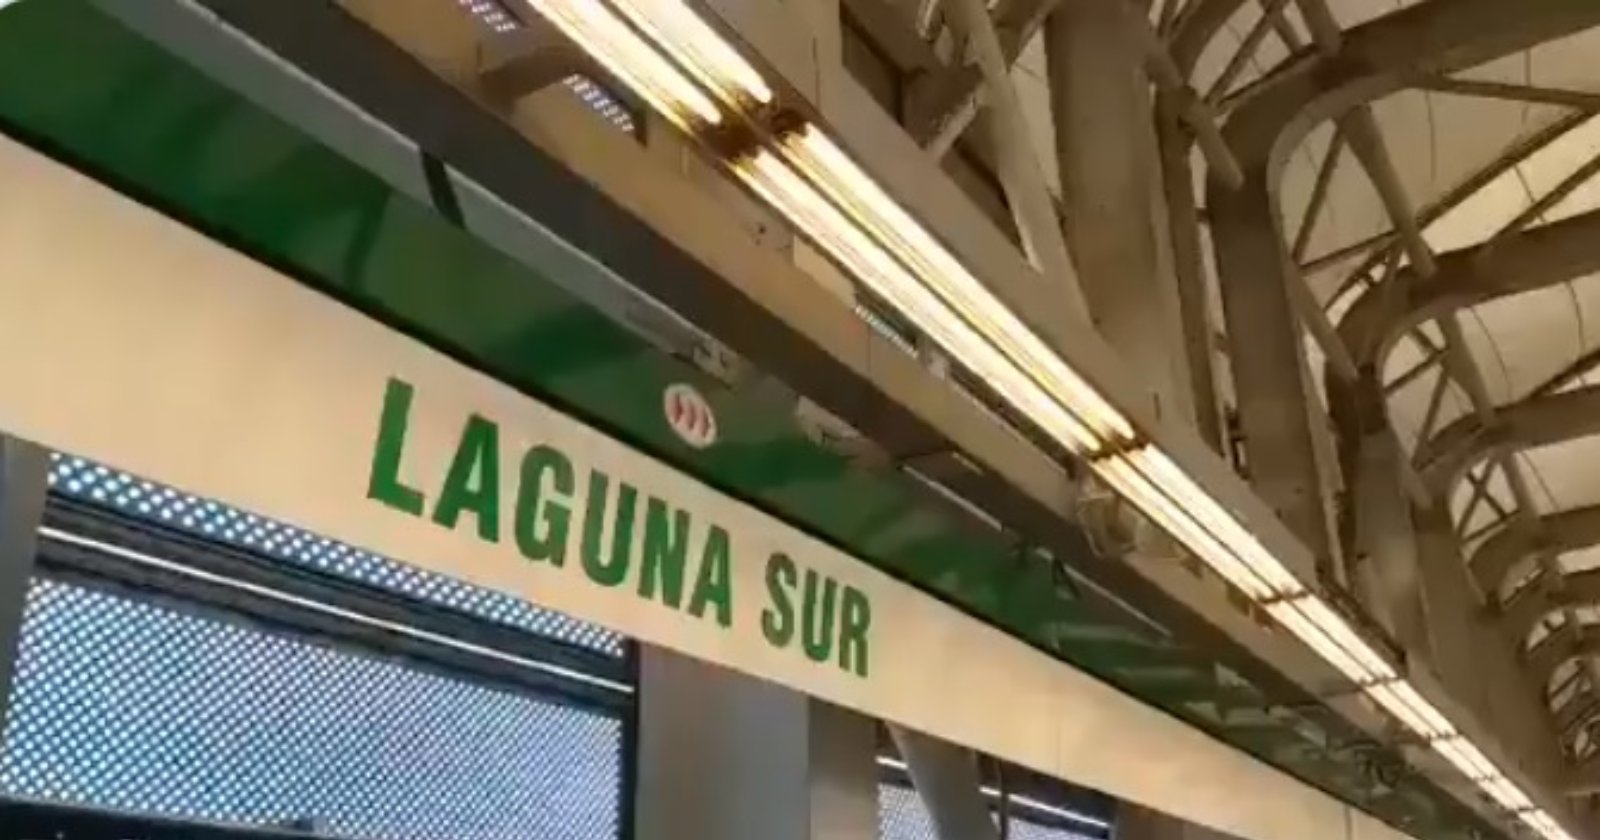 Metro Laguna Sur